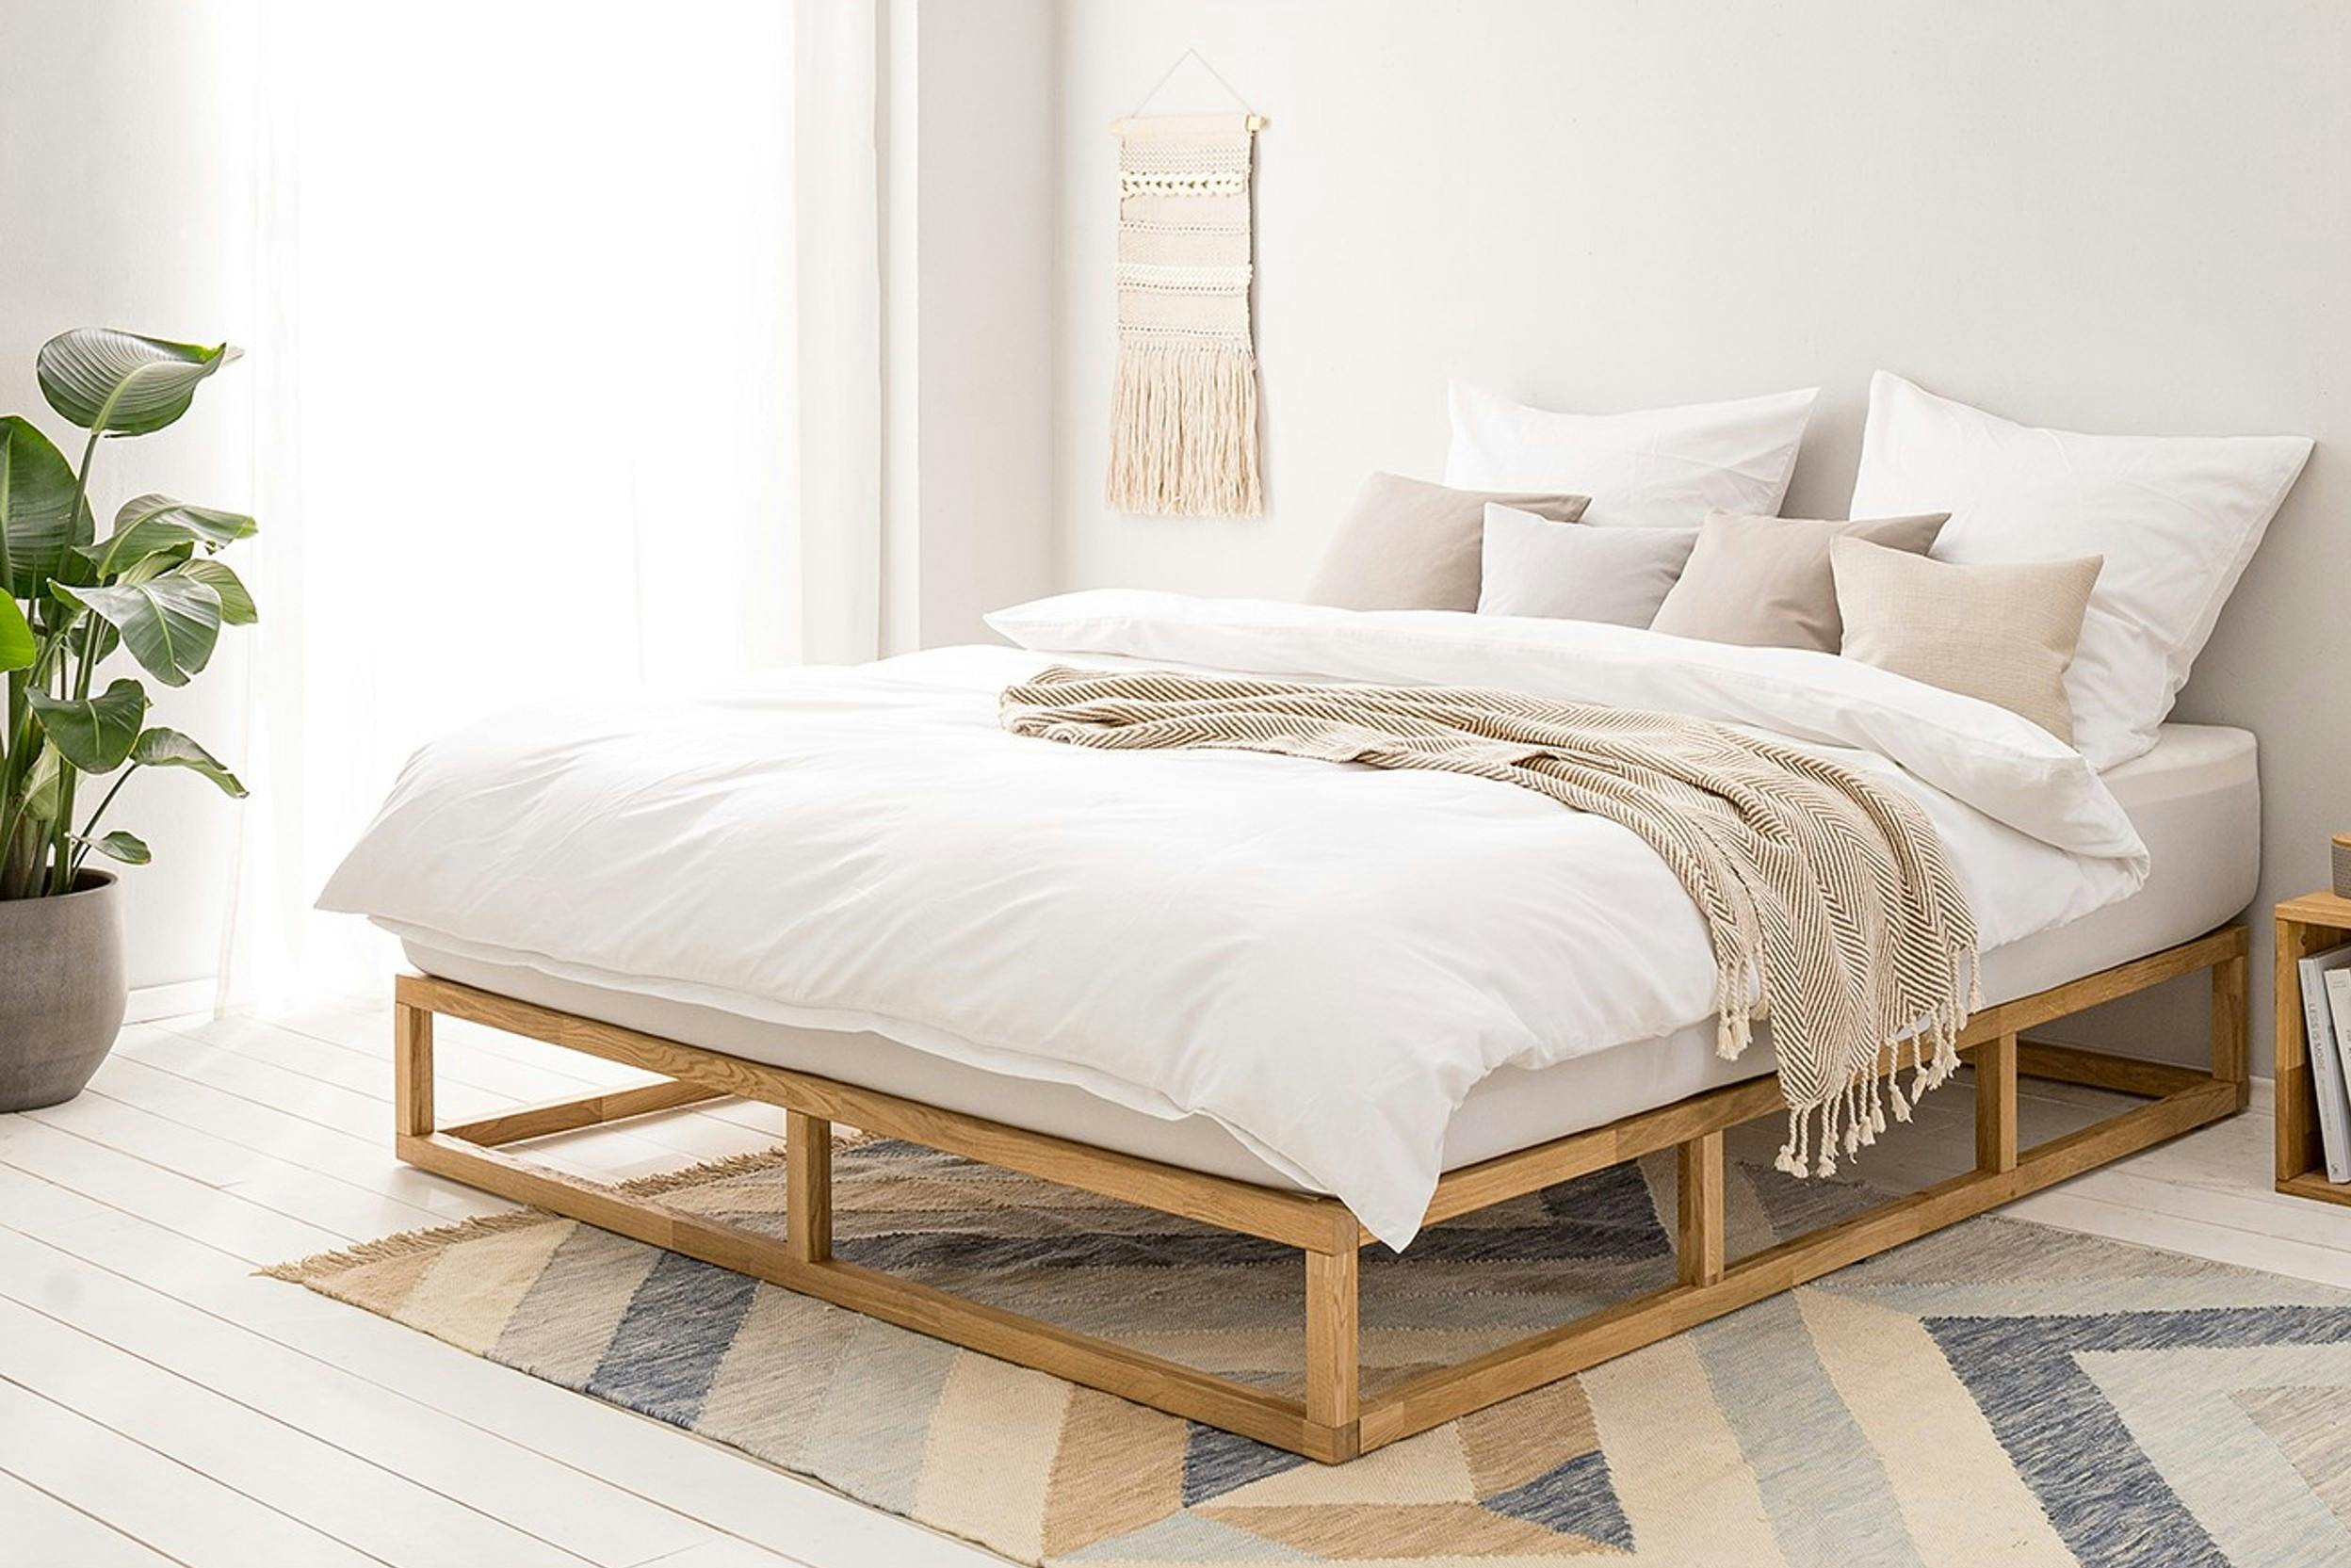 Helles Schlafzimmer mit Bett mit heller Bettwäsche, Teppich, Pflanze und Makramee-Wandbehang